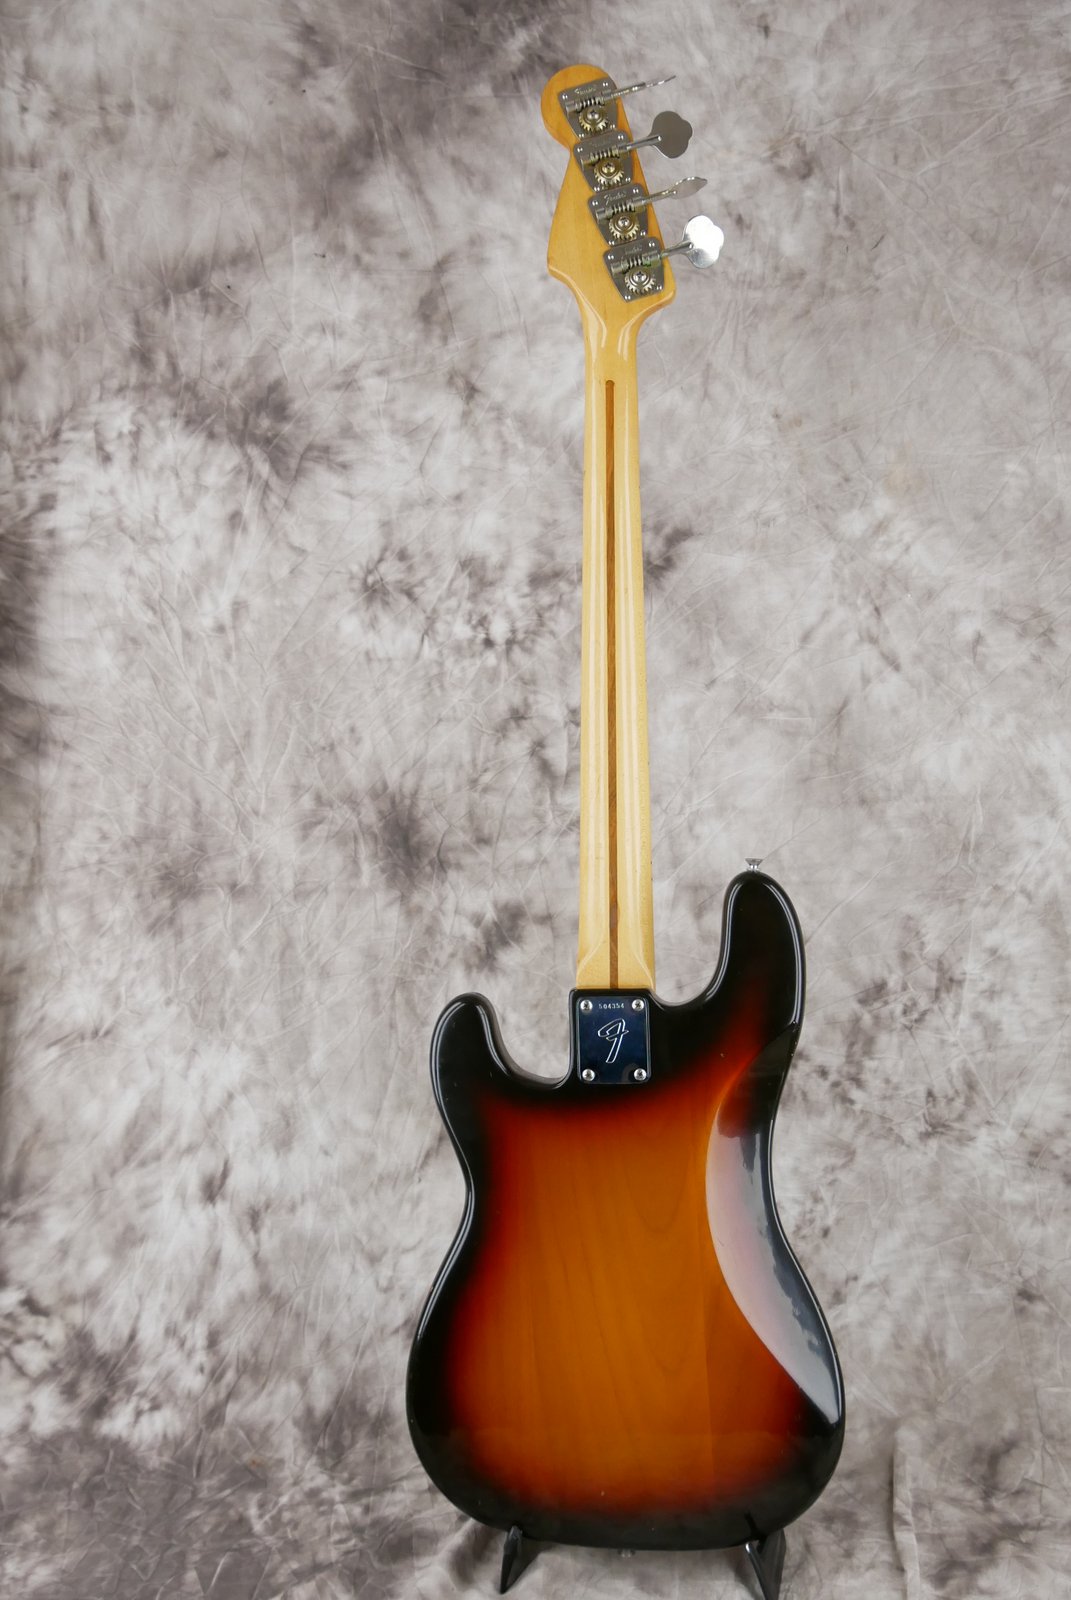 Fender-Precision-Bass-1974-sunburst-003.JPG